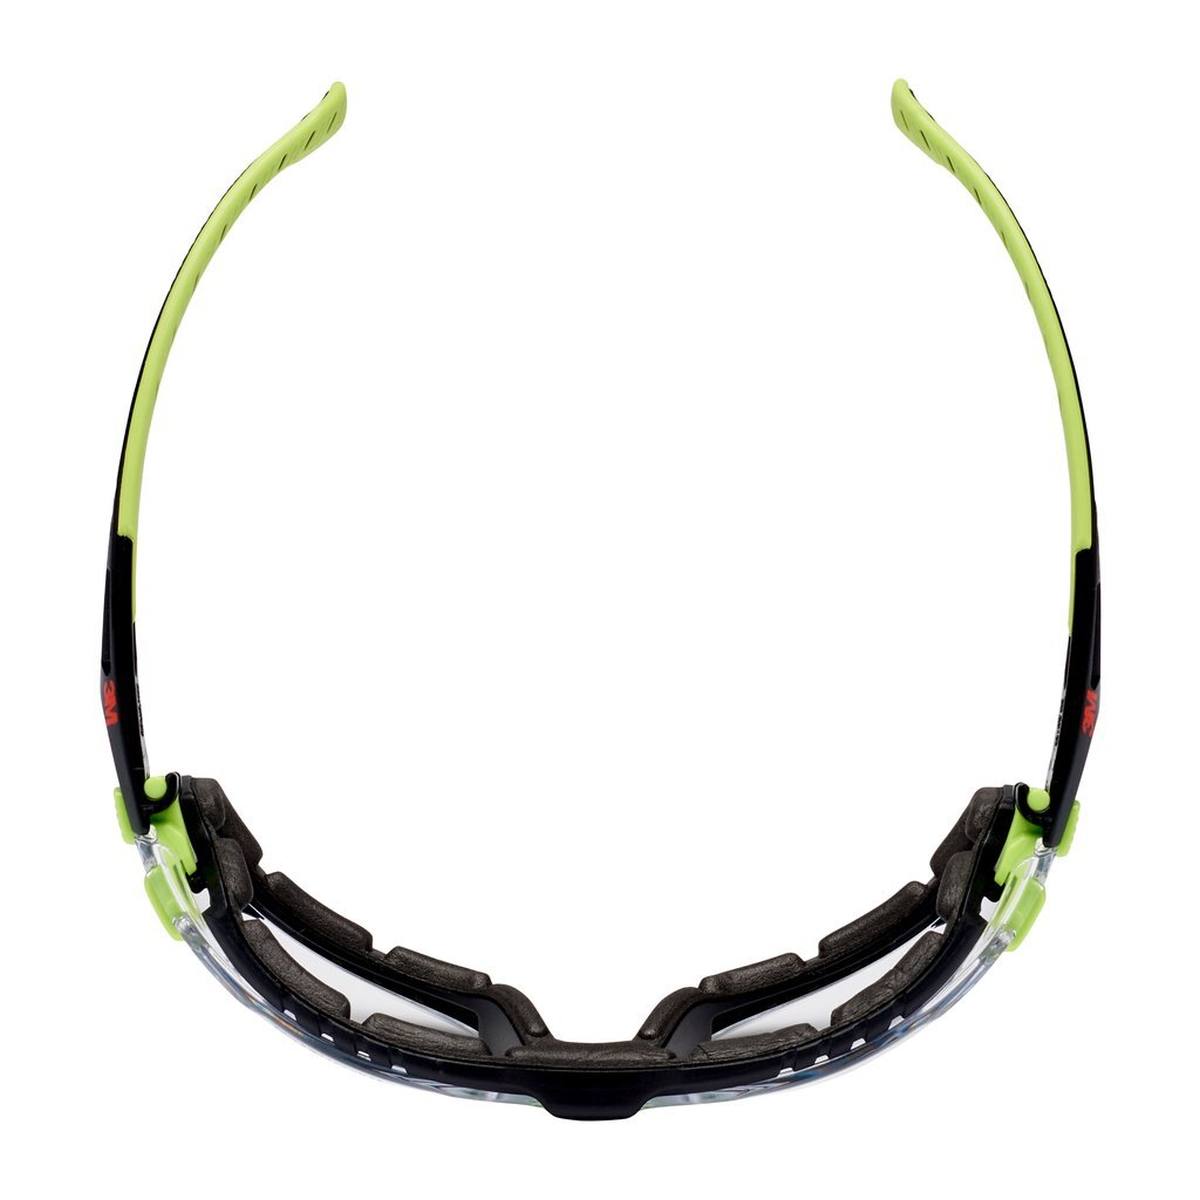 3M Solus 1000 Schutzbrille mit Antibeschlag-Beschichtung, grün/schwarz, transparent, mit Tasche S1CG